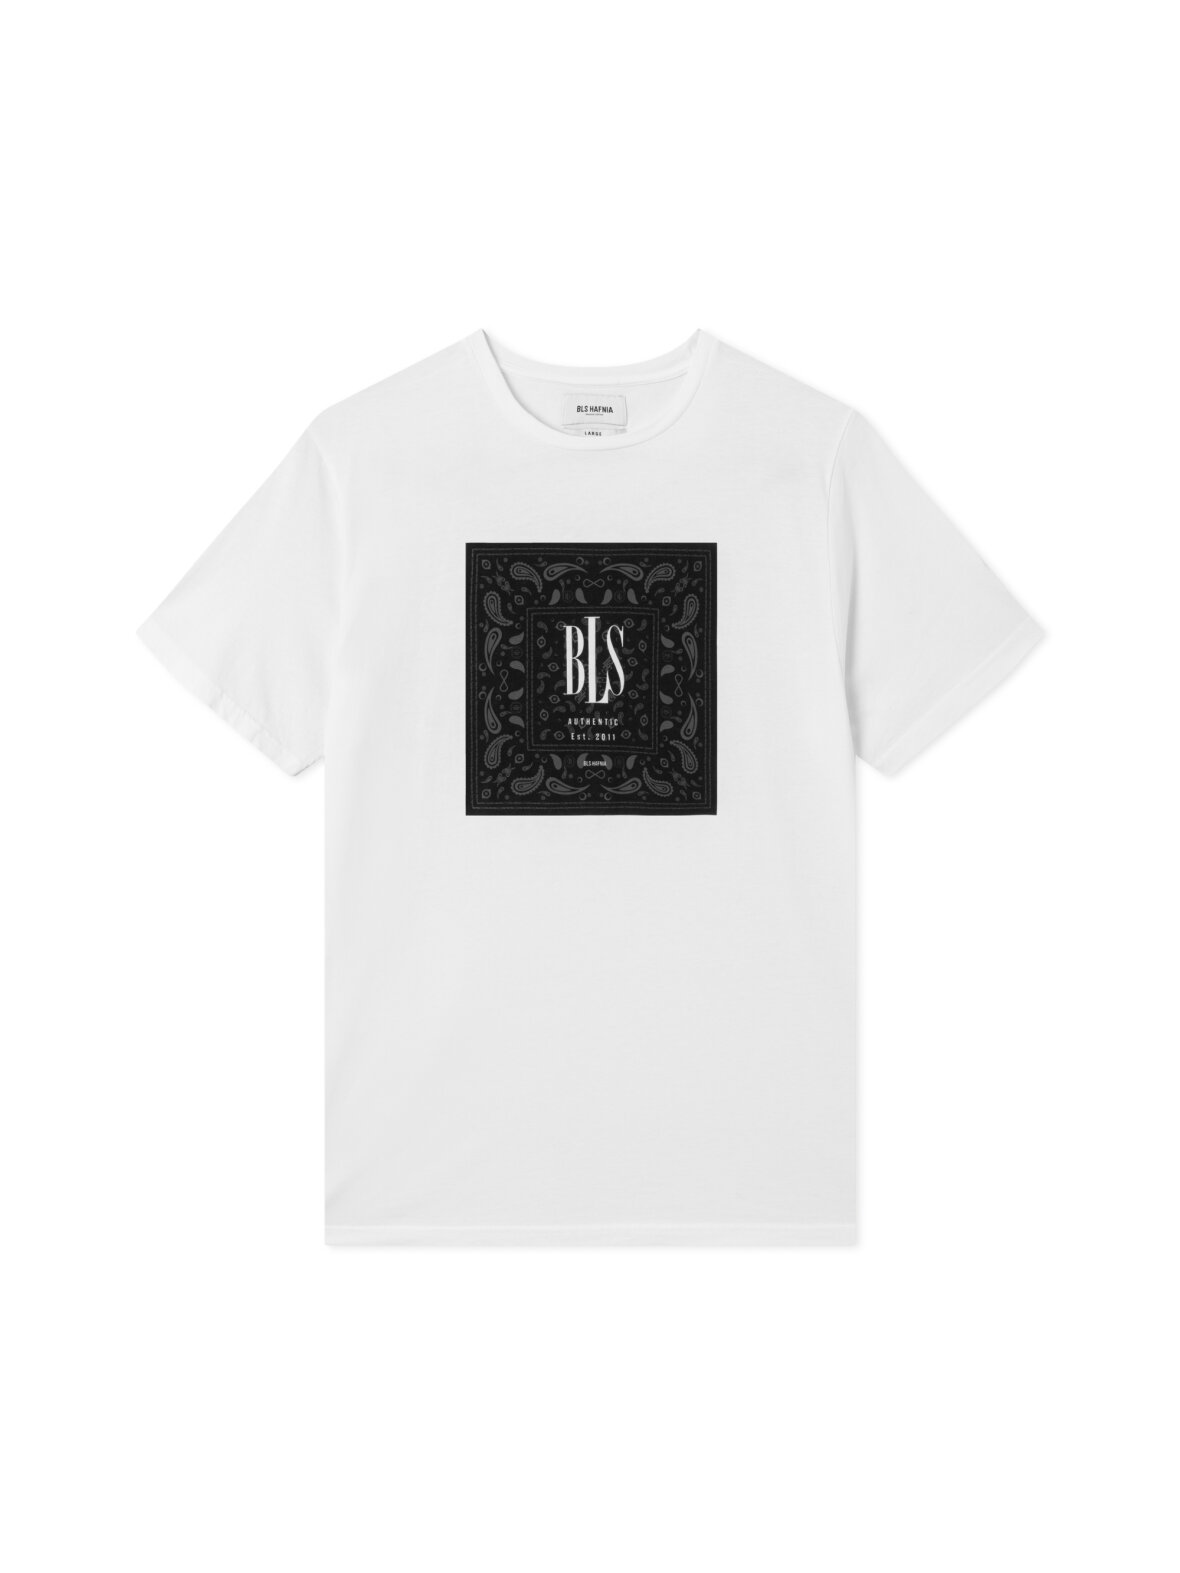 Frem Valg initial CC Christensen - T-Shirt - BLS HAFNIA - Bandana Box T-shirt